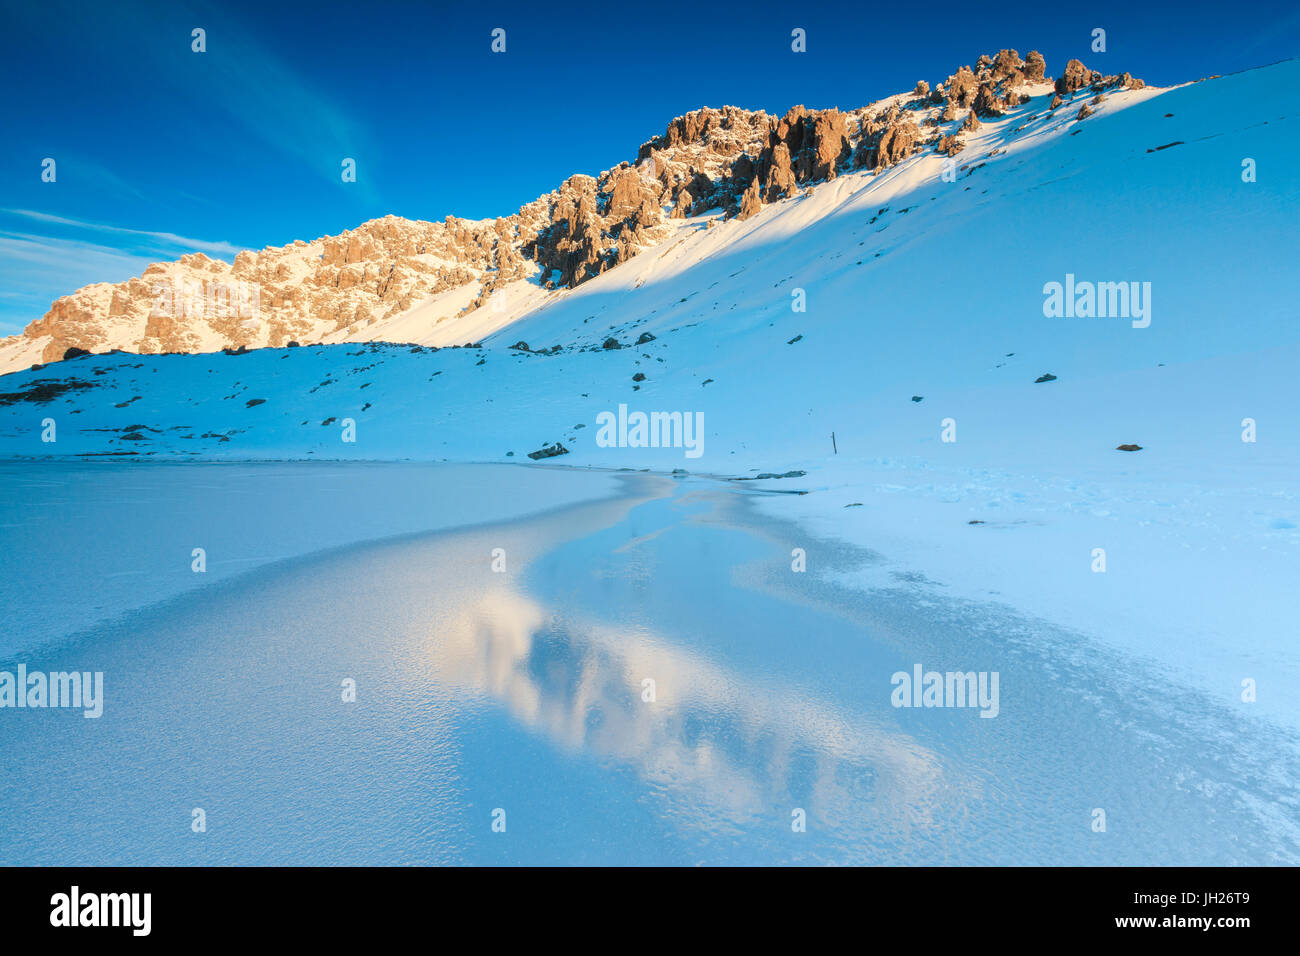 Vette innevate si riflette nel lago ghiacciato, Piz Umbrail all'alba, Valle del Braulio, Valtellina, Lombardia, Italia, Europa Foto Stock